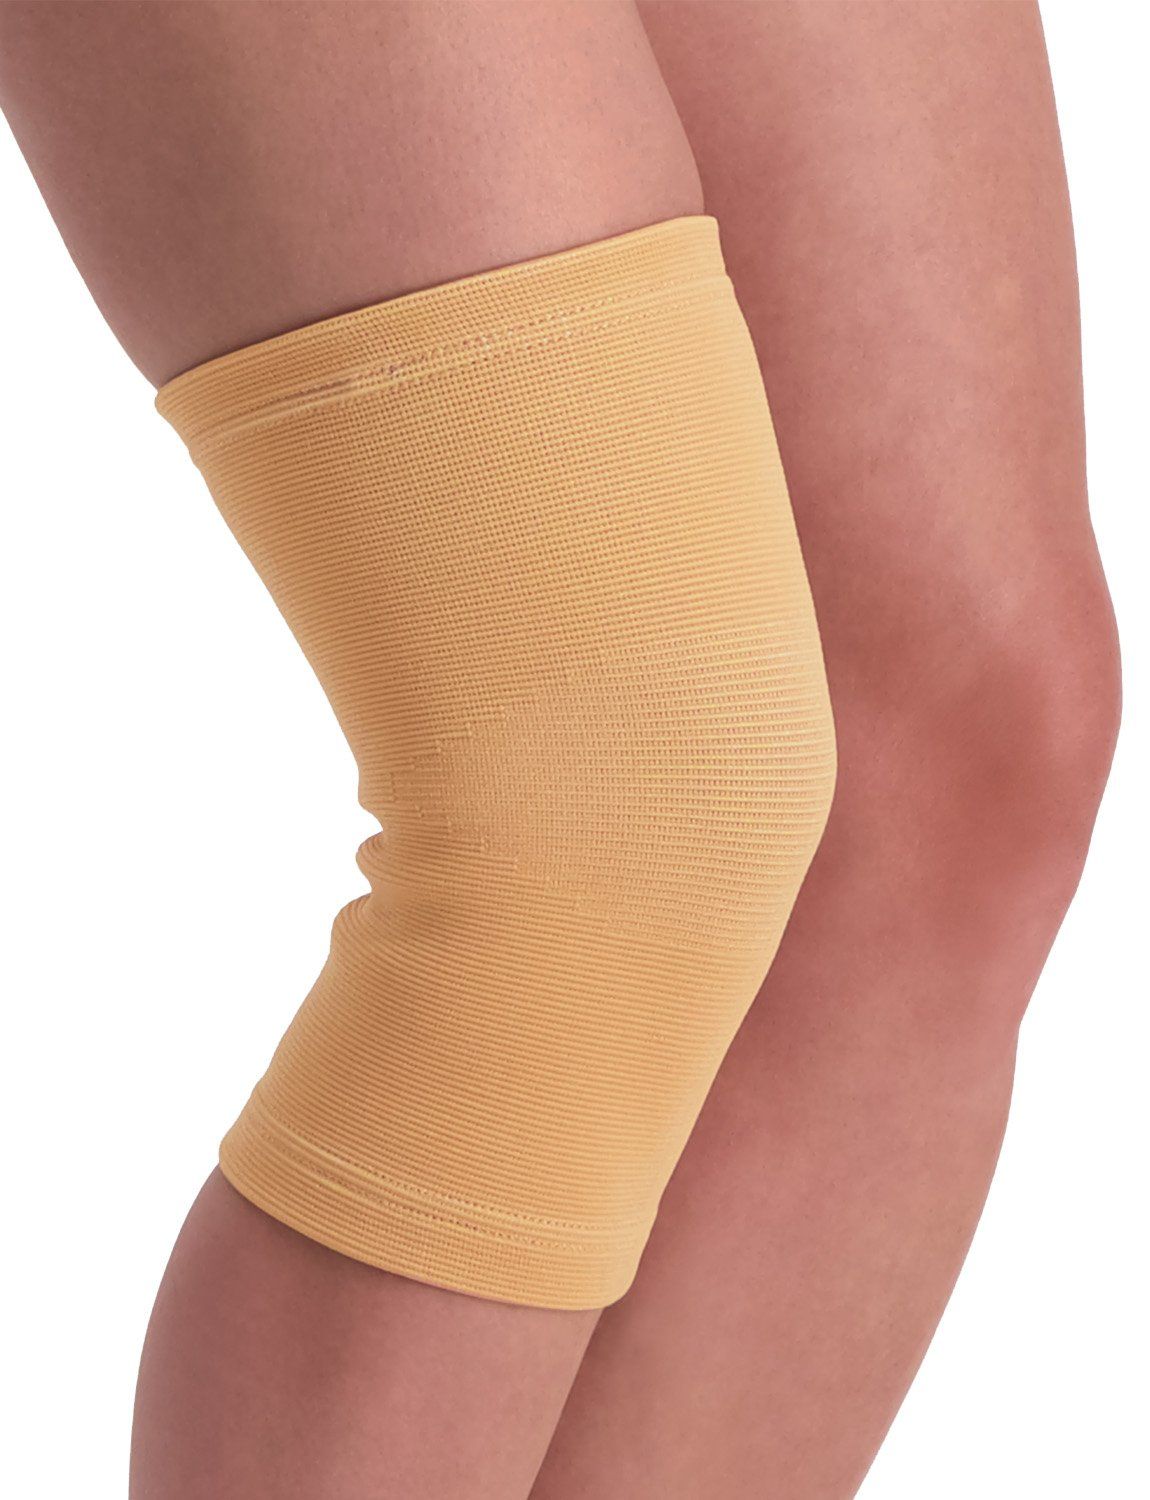 medidu knee sleeve for sale